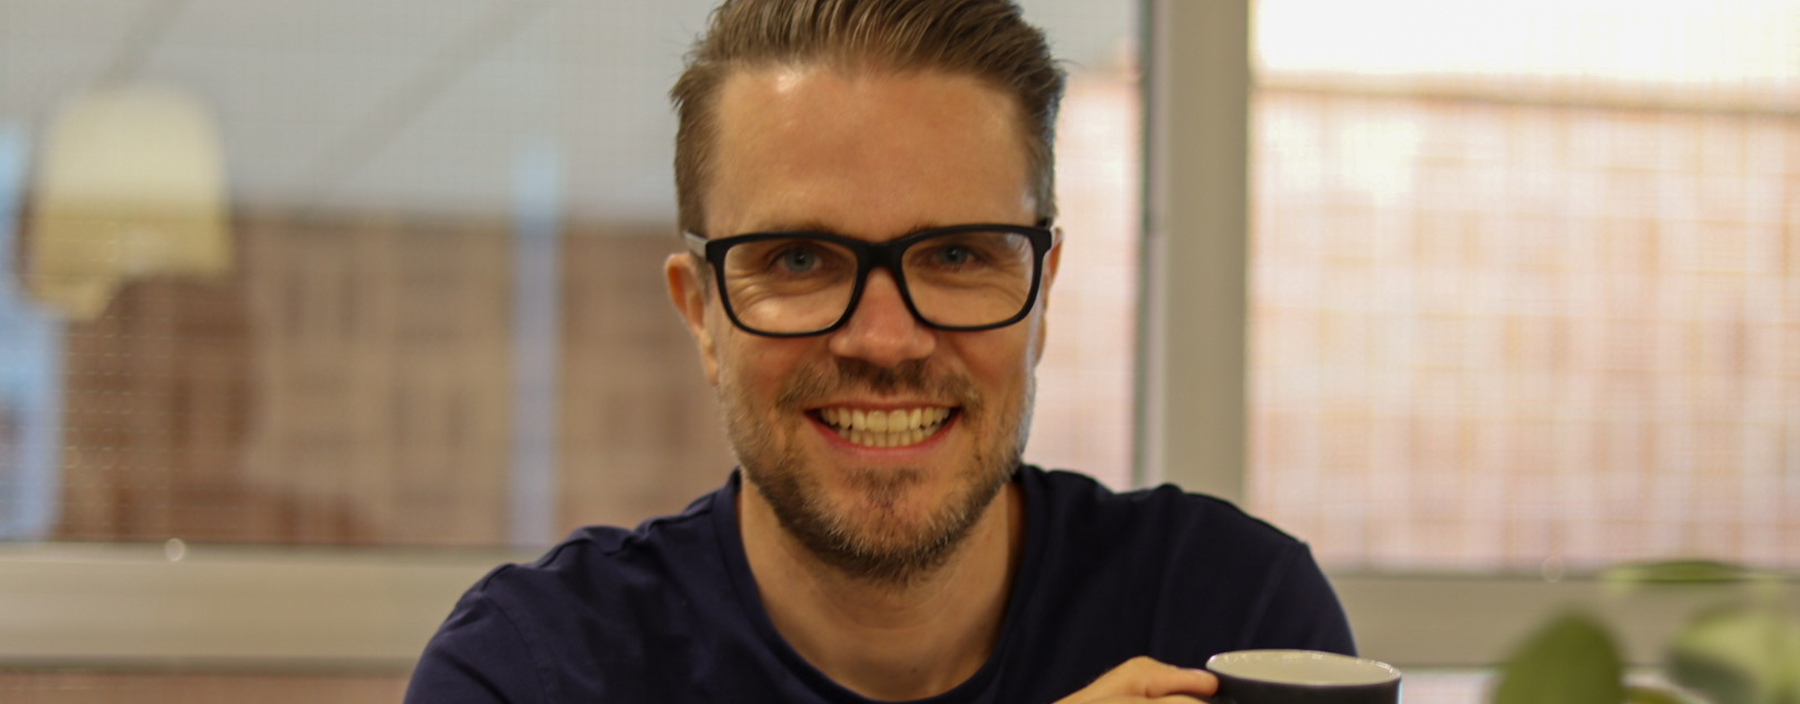 Anders Dahlberg, Affärsområdesansvarig Kvadrat Borlänge.